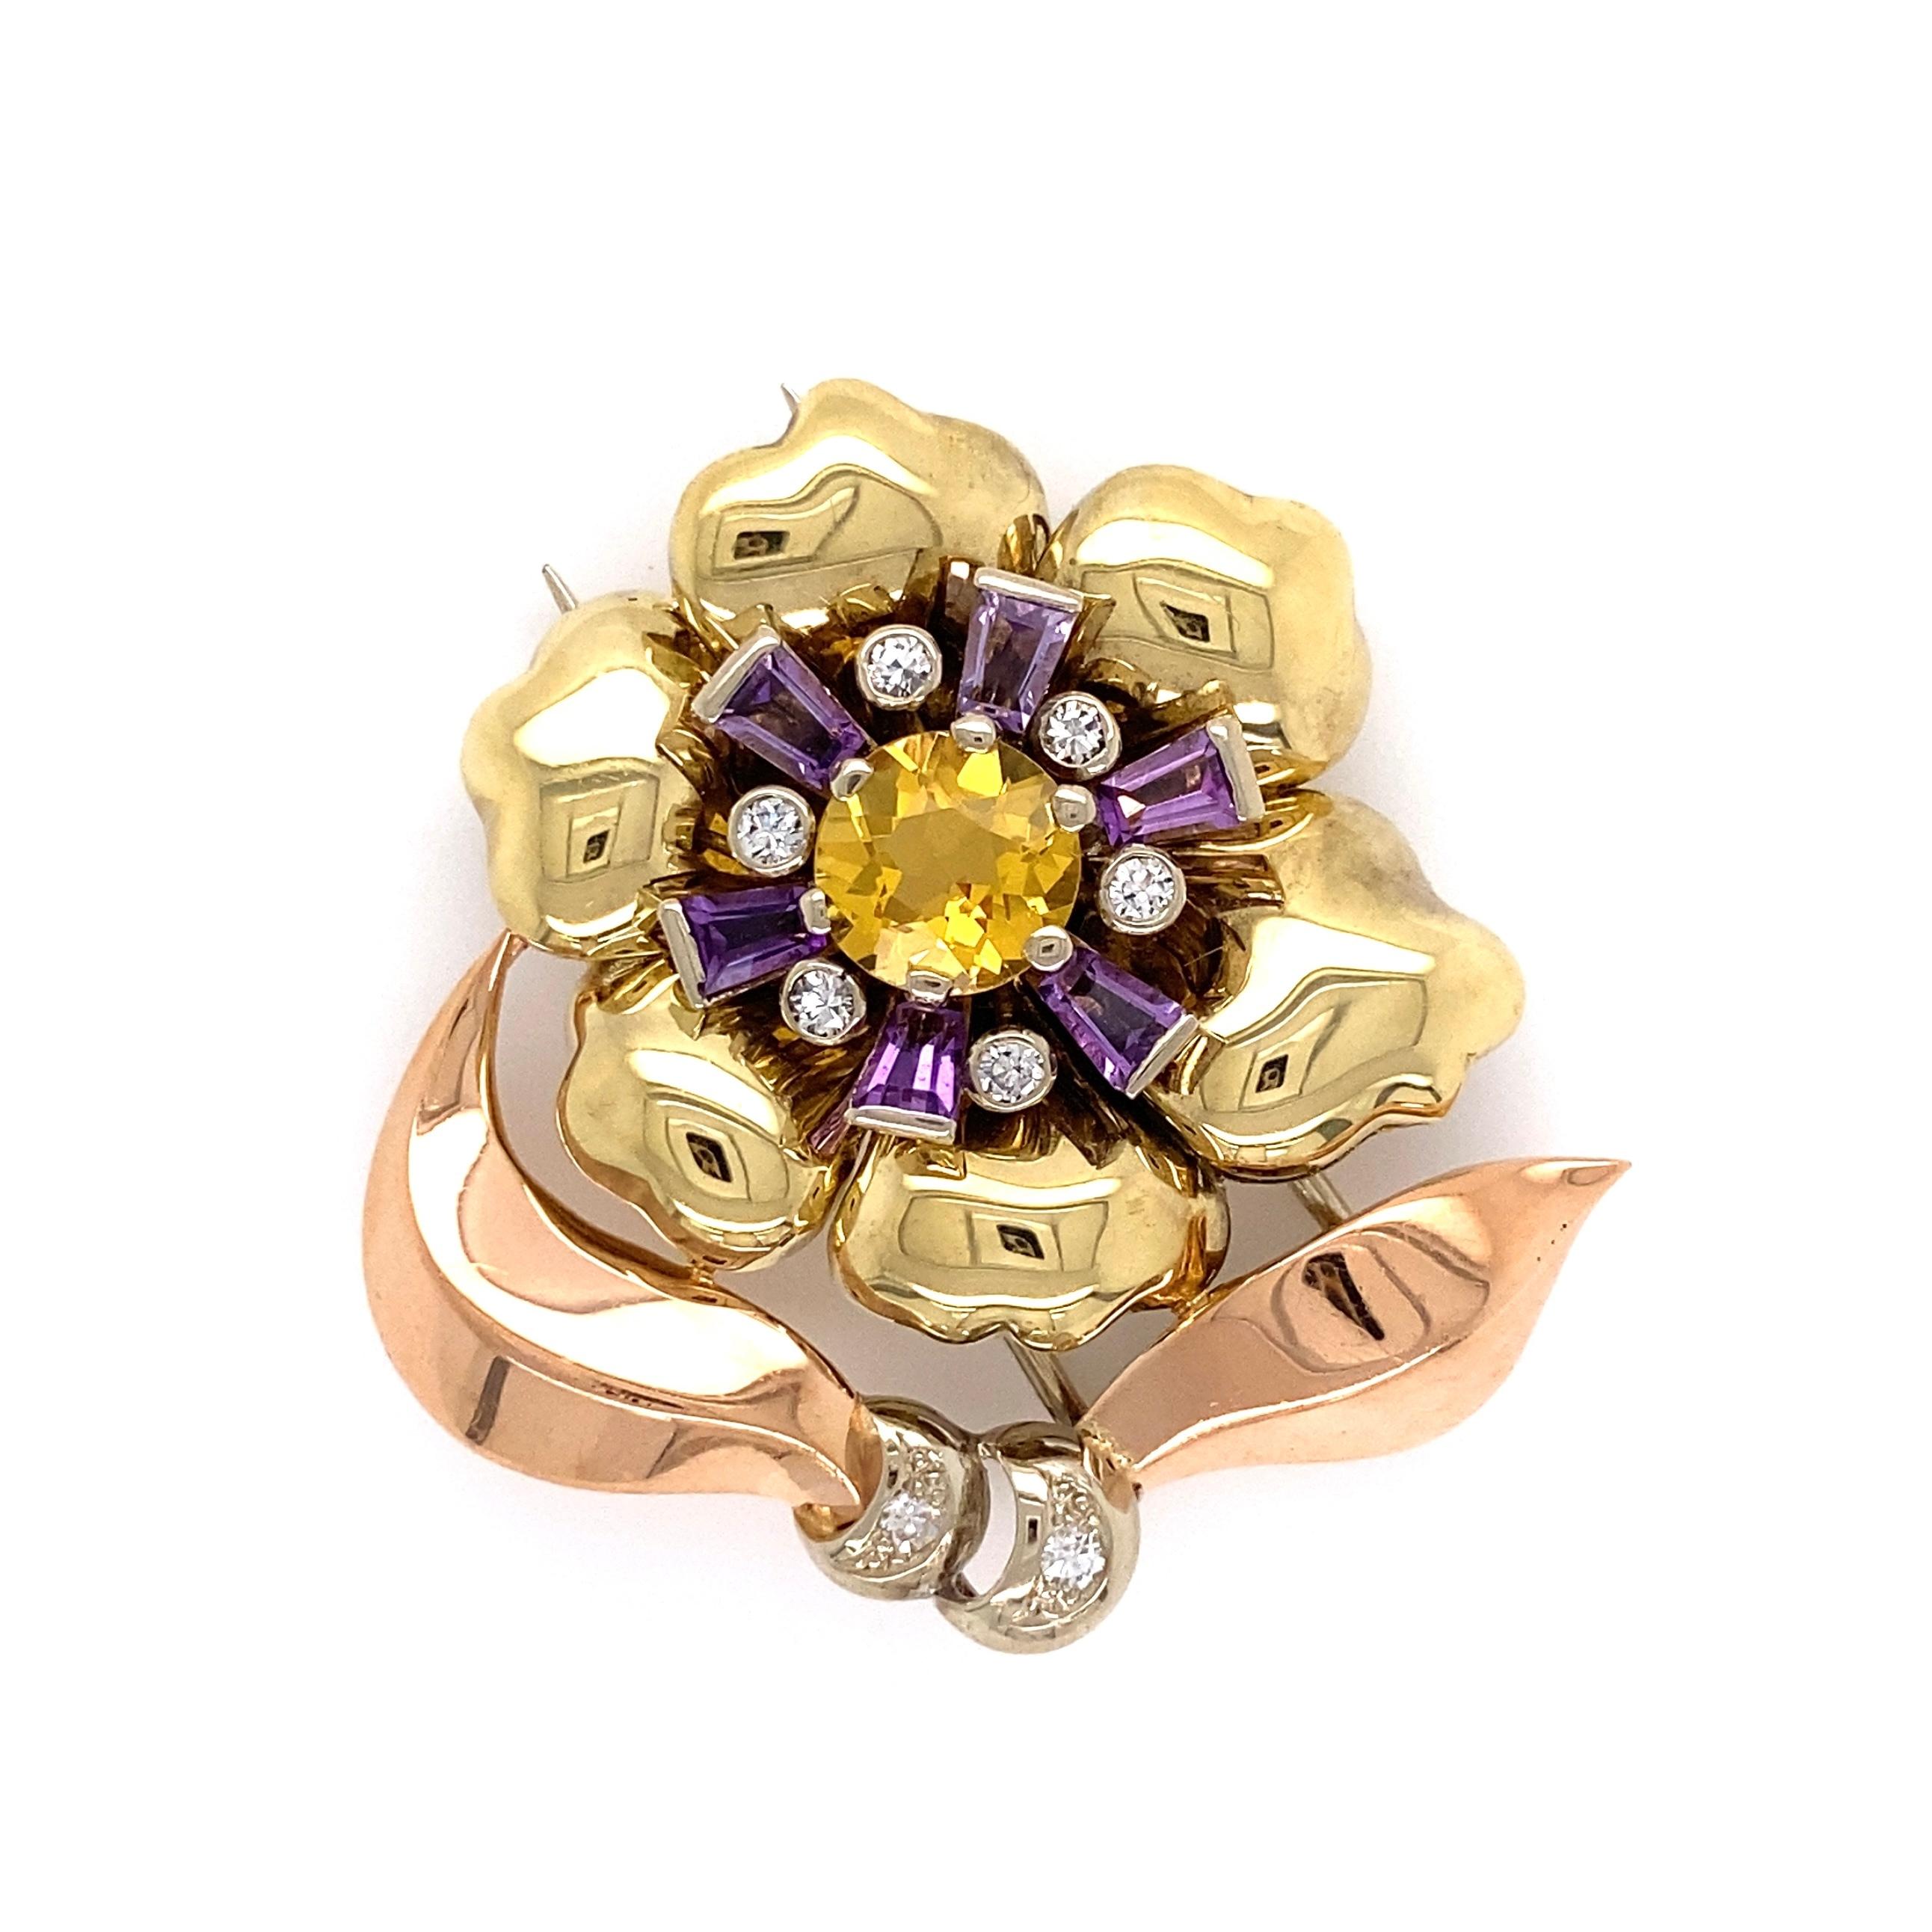 Einfach schön und fein detaillierte Retro stilisierte Blume Design Gold Brosche Hand mit 8 Diamanten, ca. 0,35tcw, 1 Citrin ca. 1,15ct und 6 Baguette Amethyst ca. 0,50tcw gesetzt. Ca. 1,25